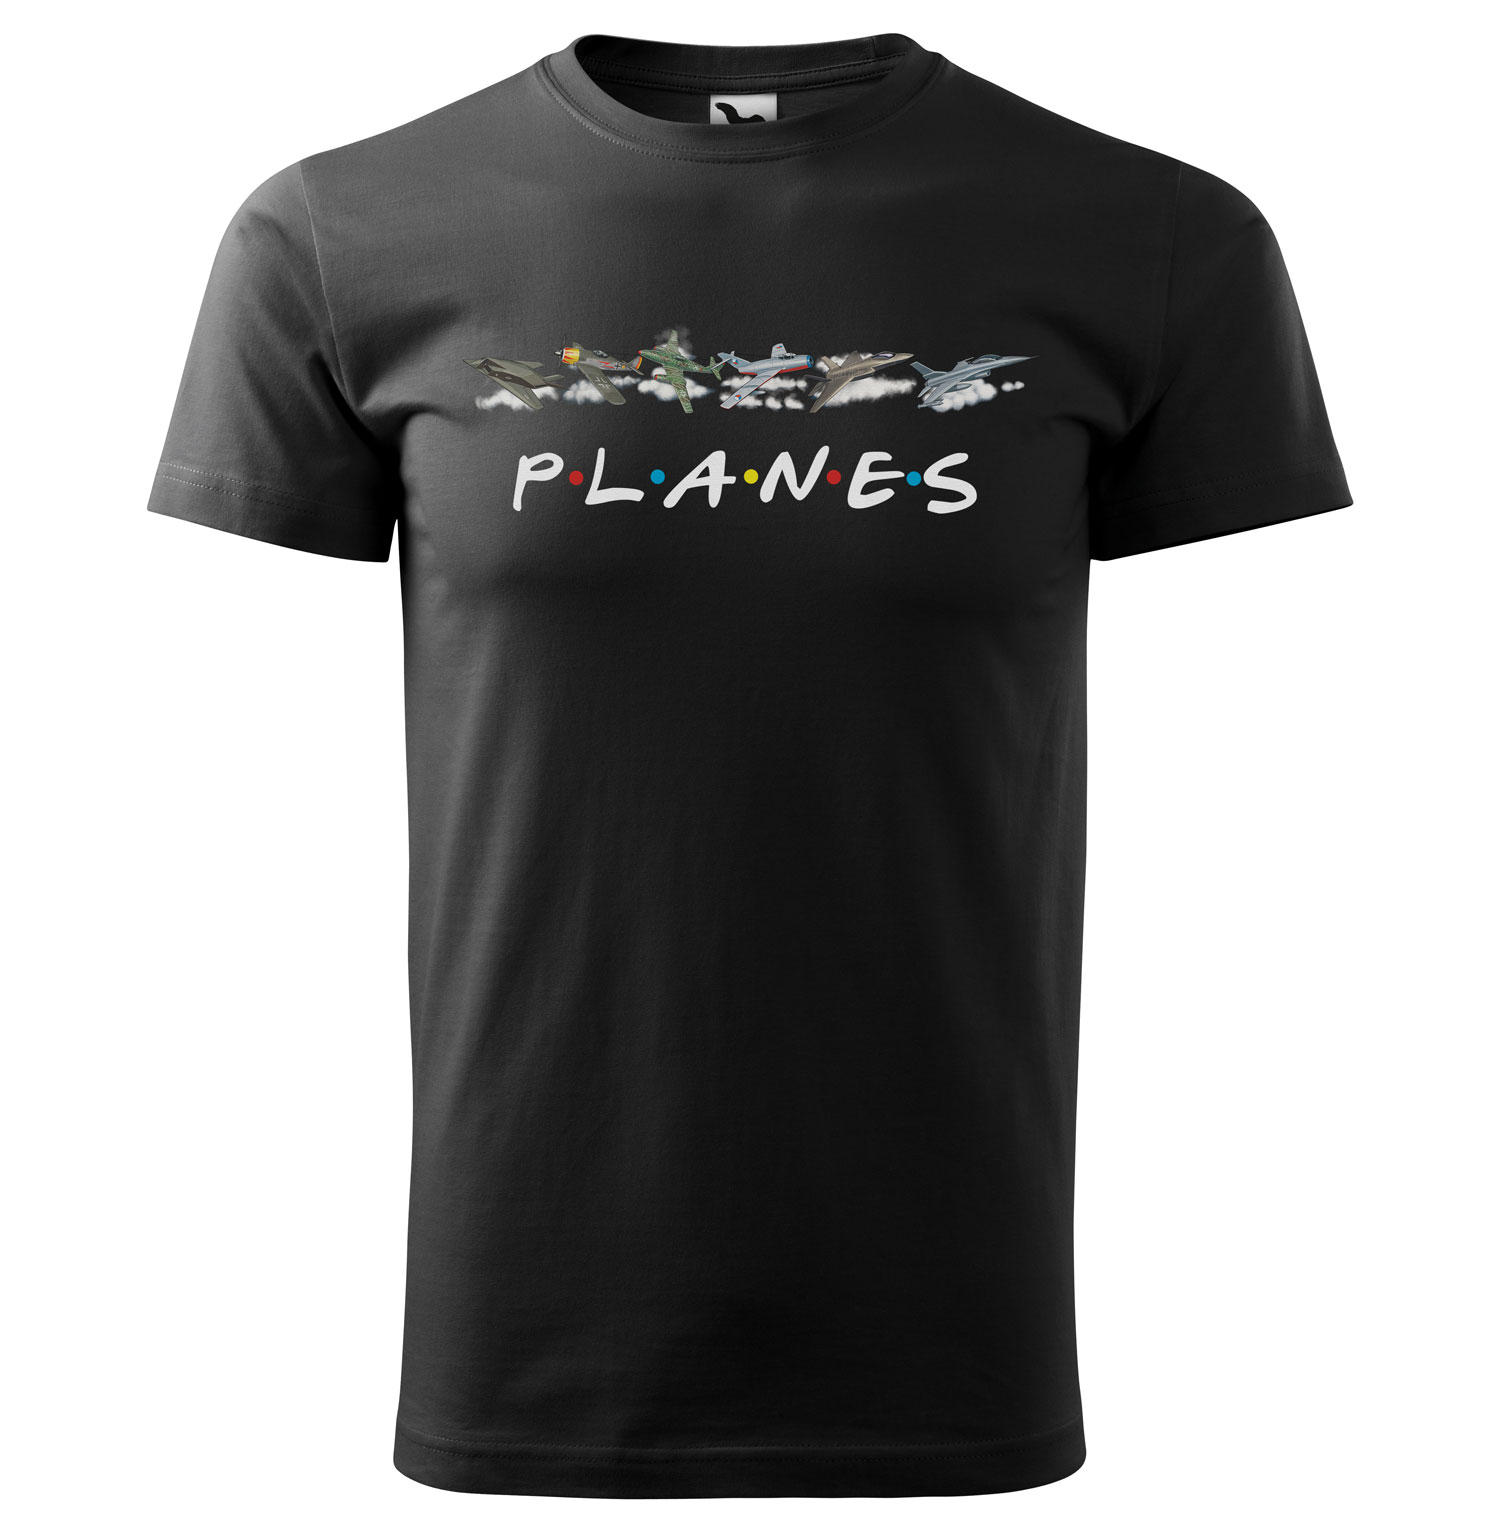 Tričko Planes (Velikost: L, Typ: pro muže, Barva trička: Černá)